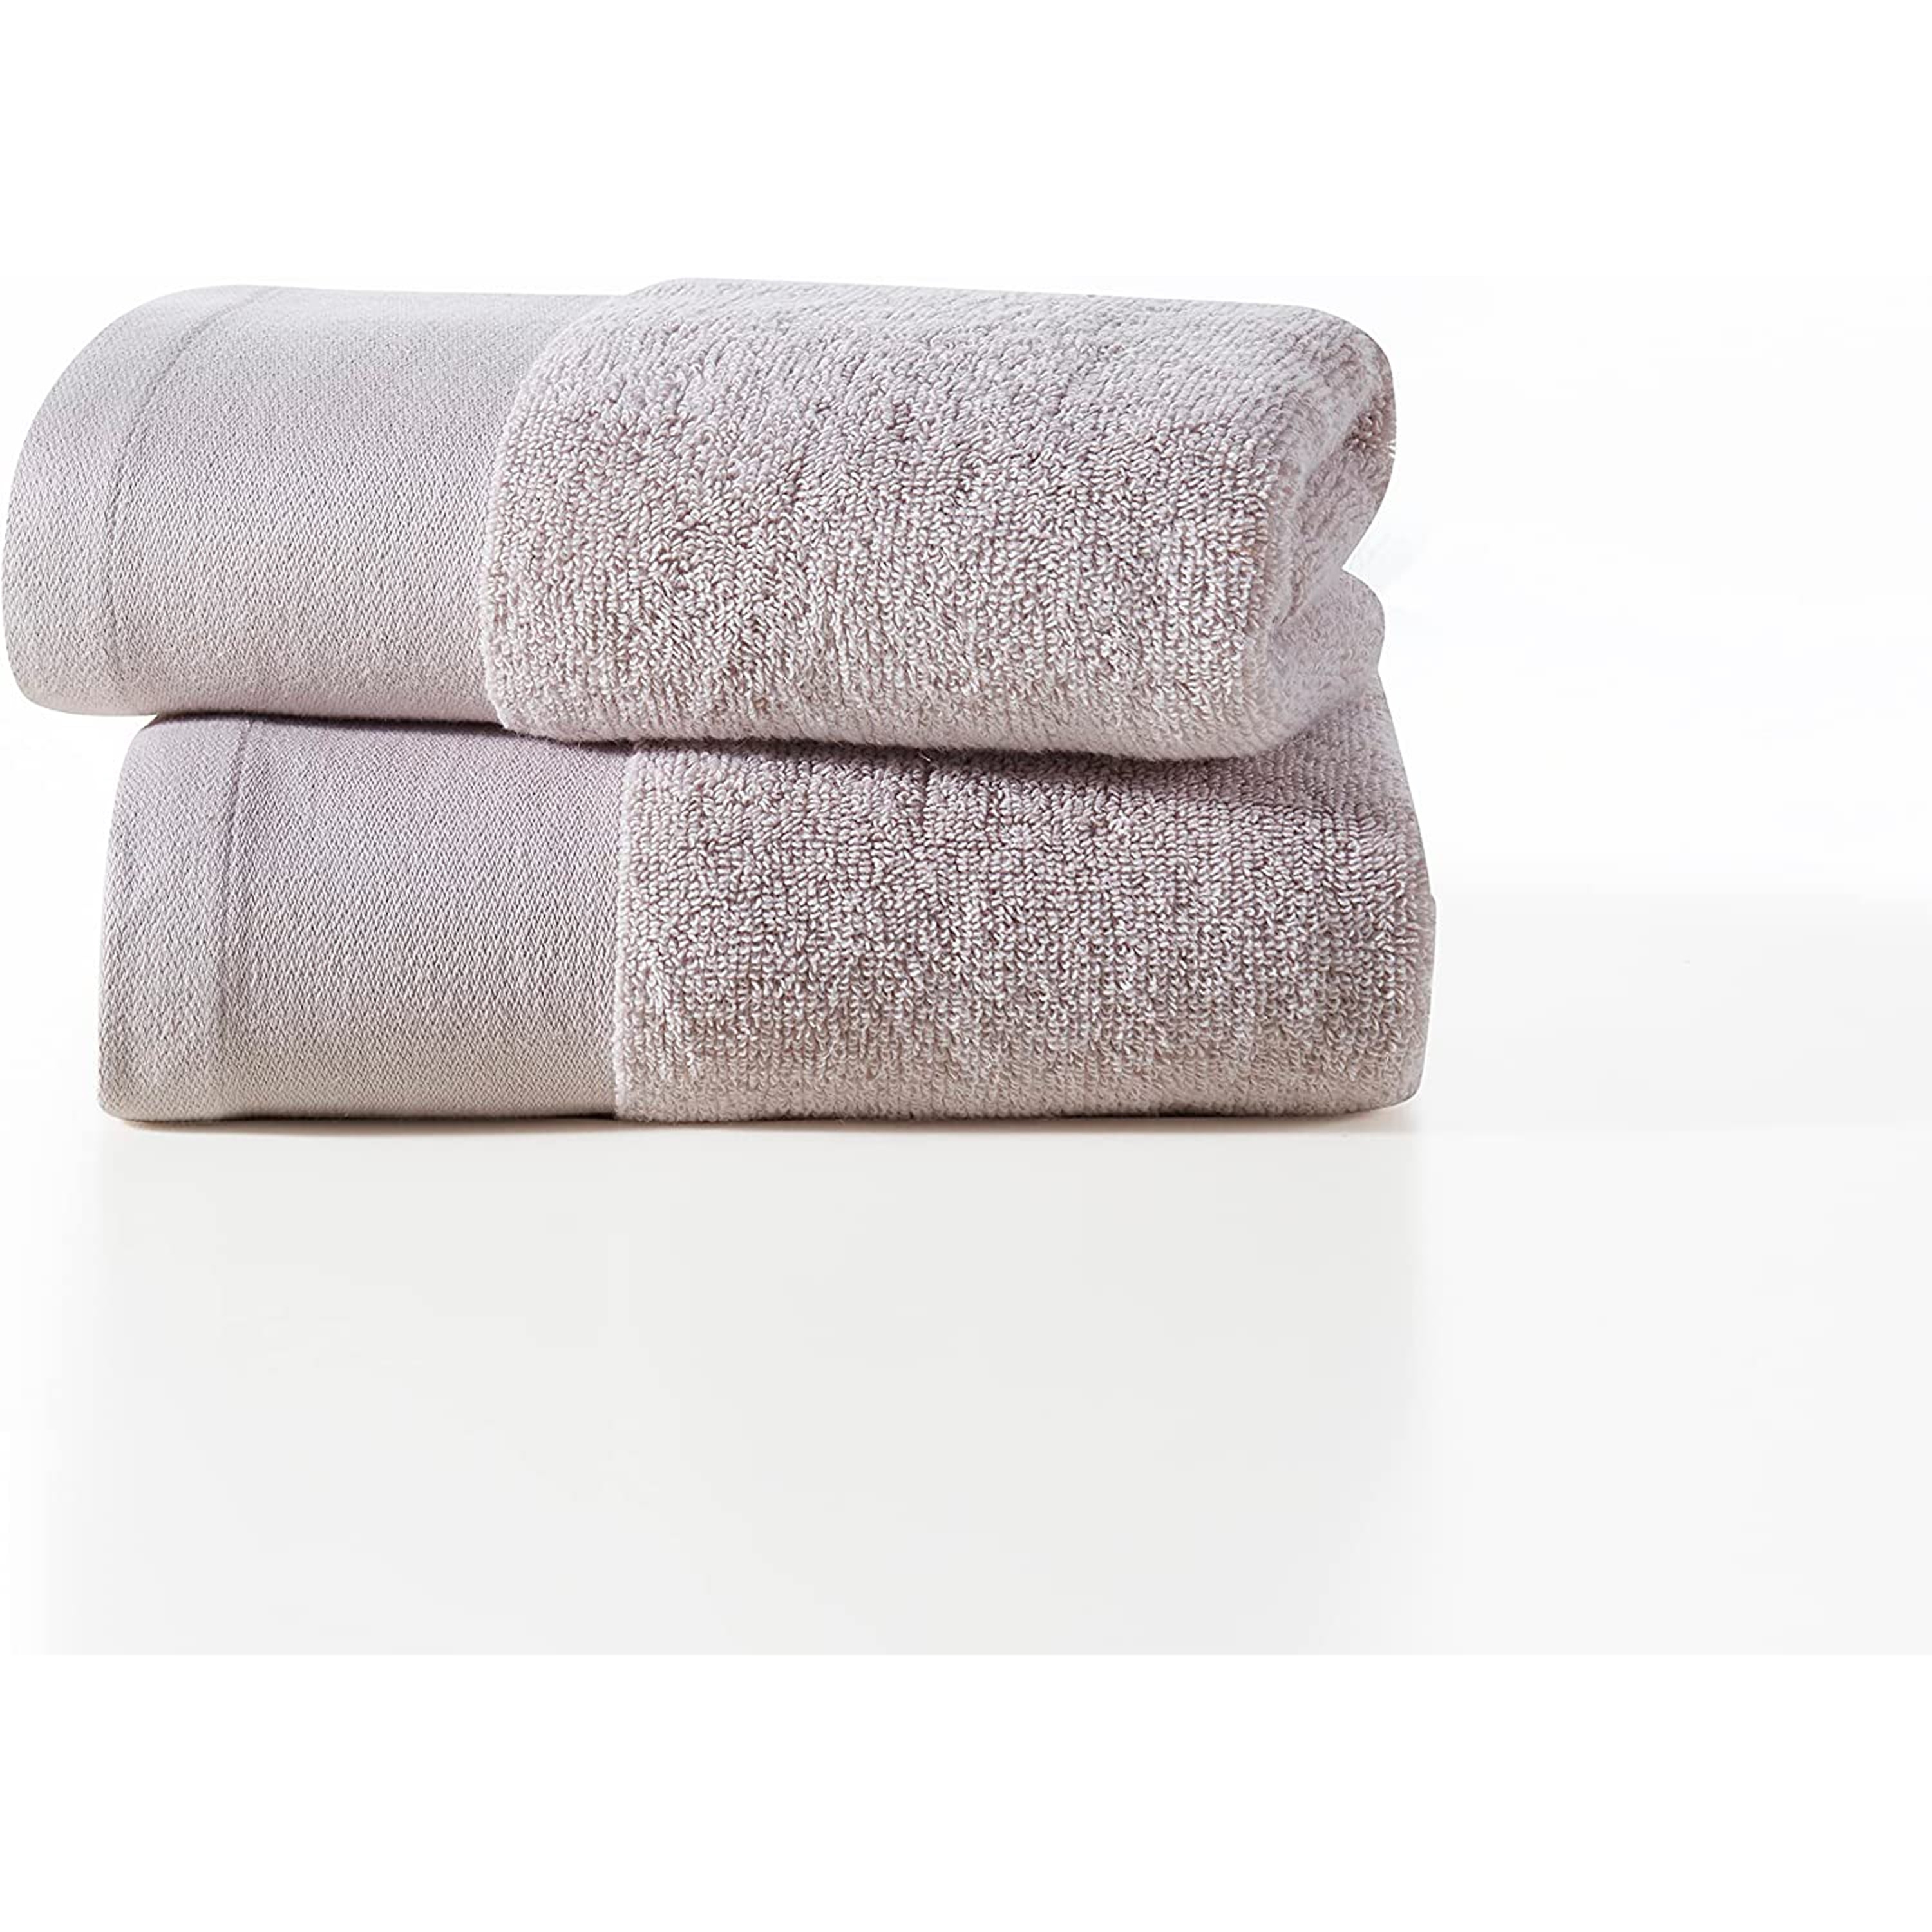 Lavish Touch 100% Cotton 600 GSM Melrose 4 PC Set of 2 Bath 2 Hand Towels Sky Bl